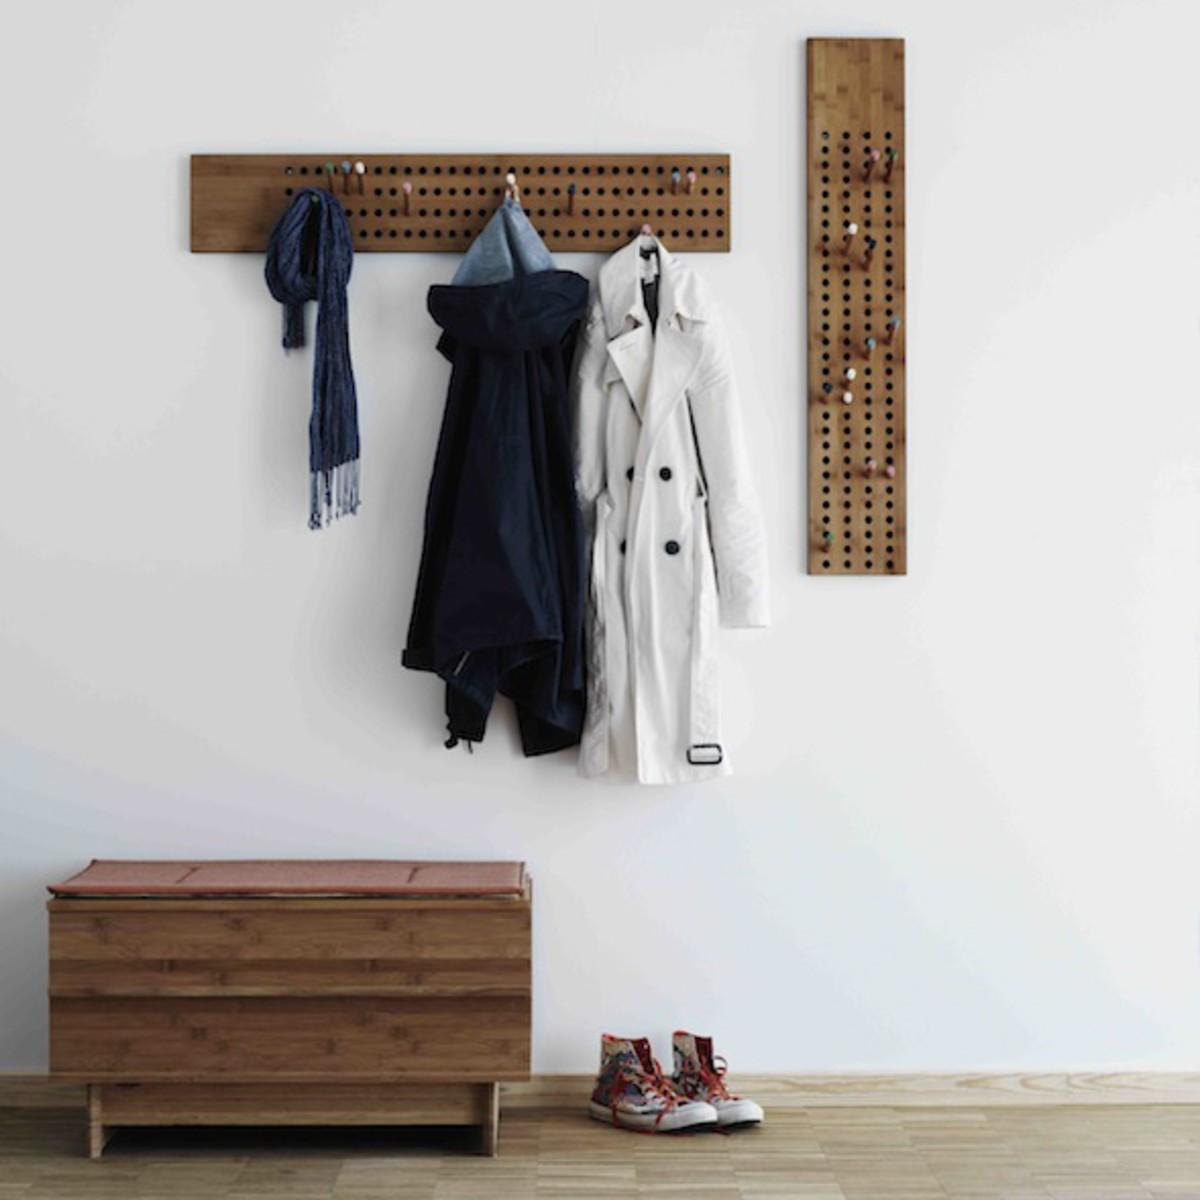 moderne Garderobenleiste von We Do Wood #garderobe #hakenleiste ©We Do Wood